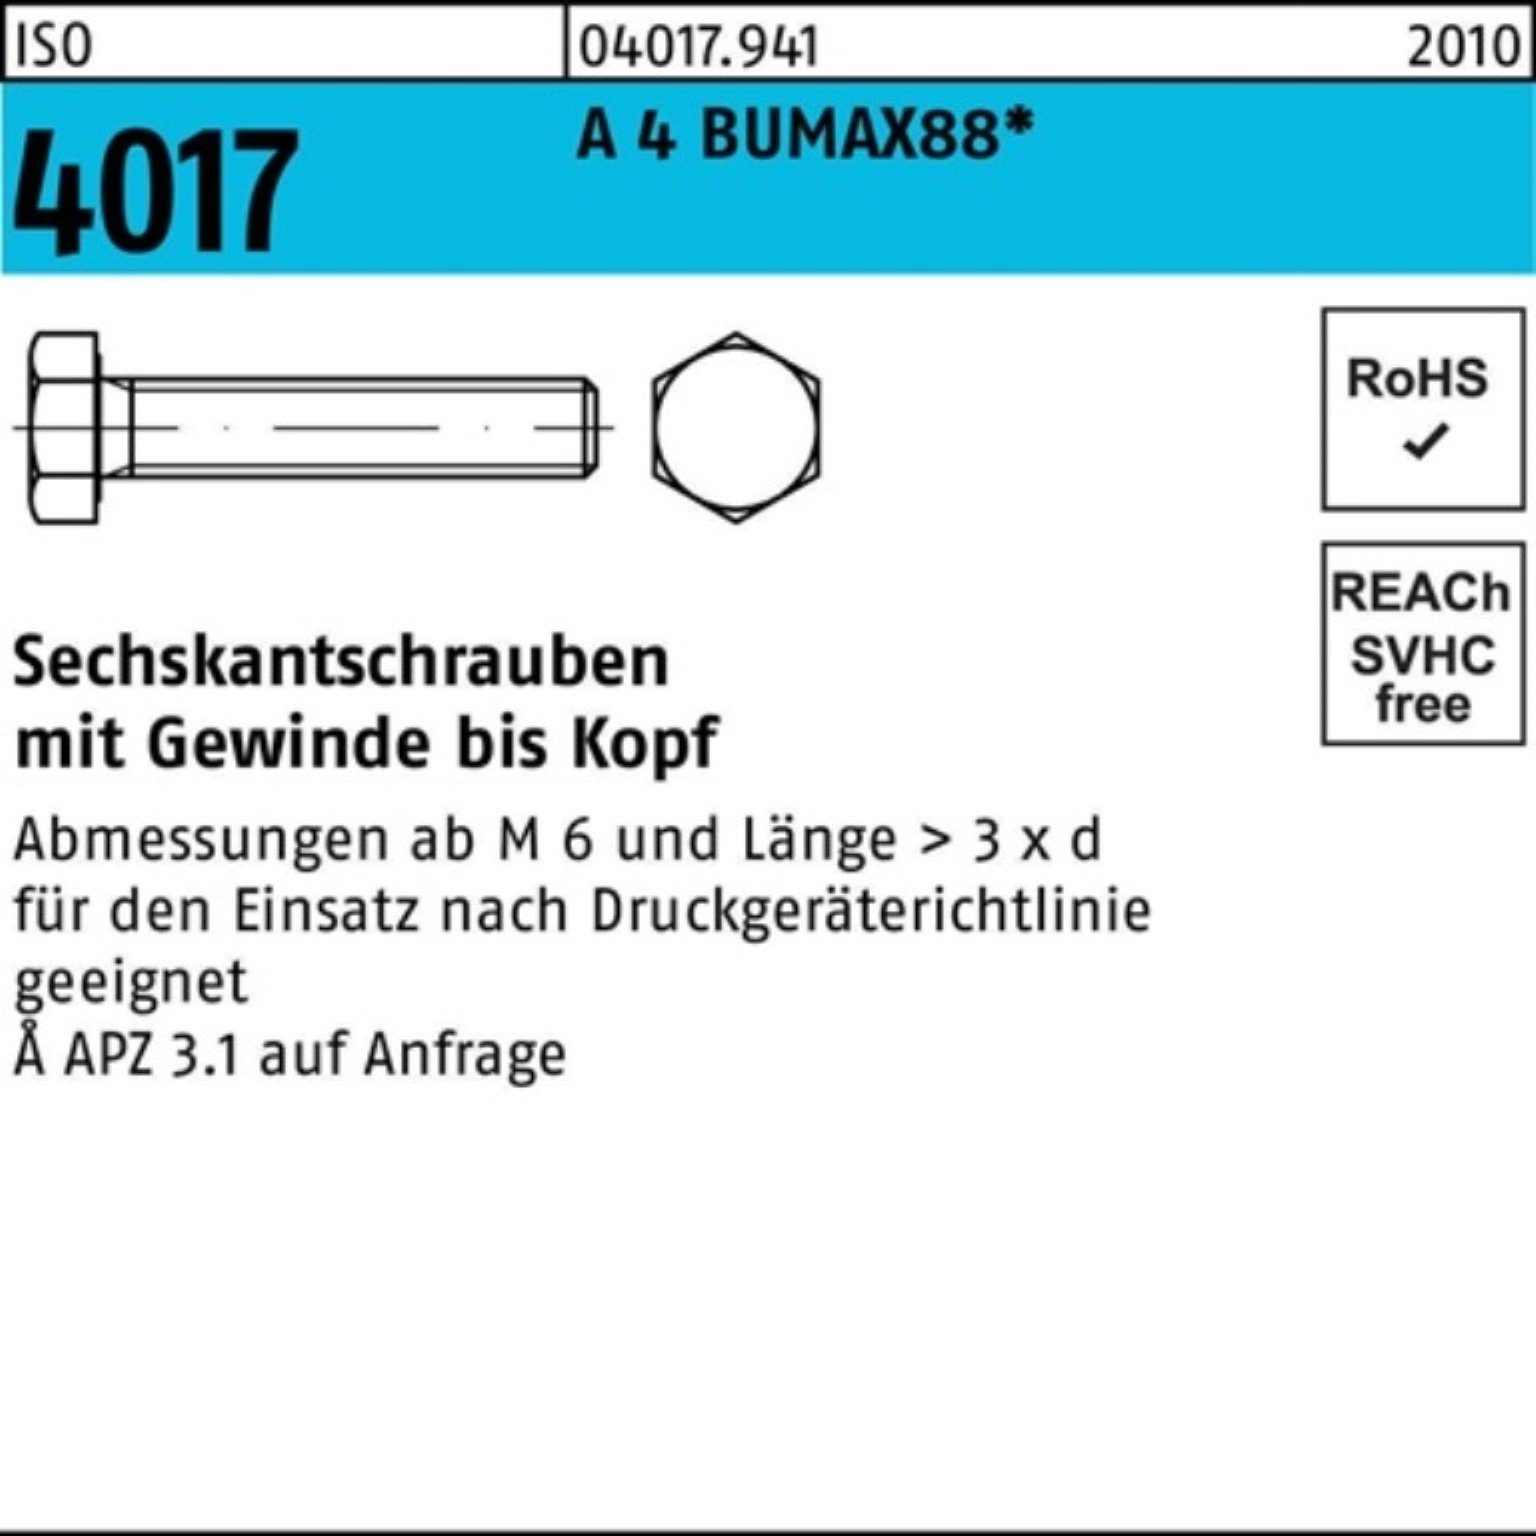 [Beliebte Verkäufe] Bufab Sechskantschraube BUMAX88 M12x 25 100er Stück VG A 35 Sechskantschraube ISO 4017 Pack 4